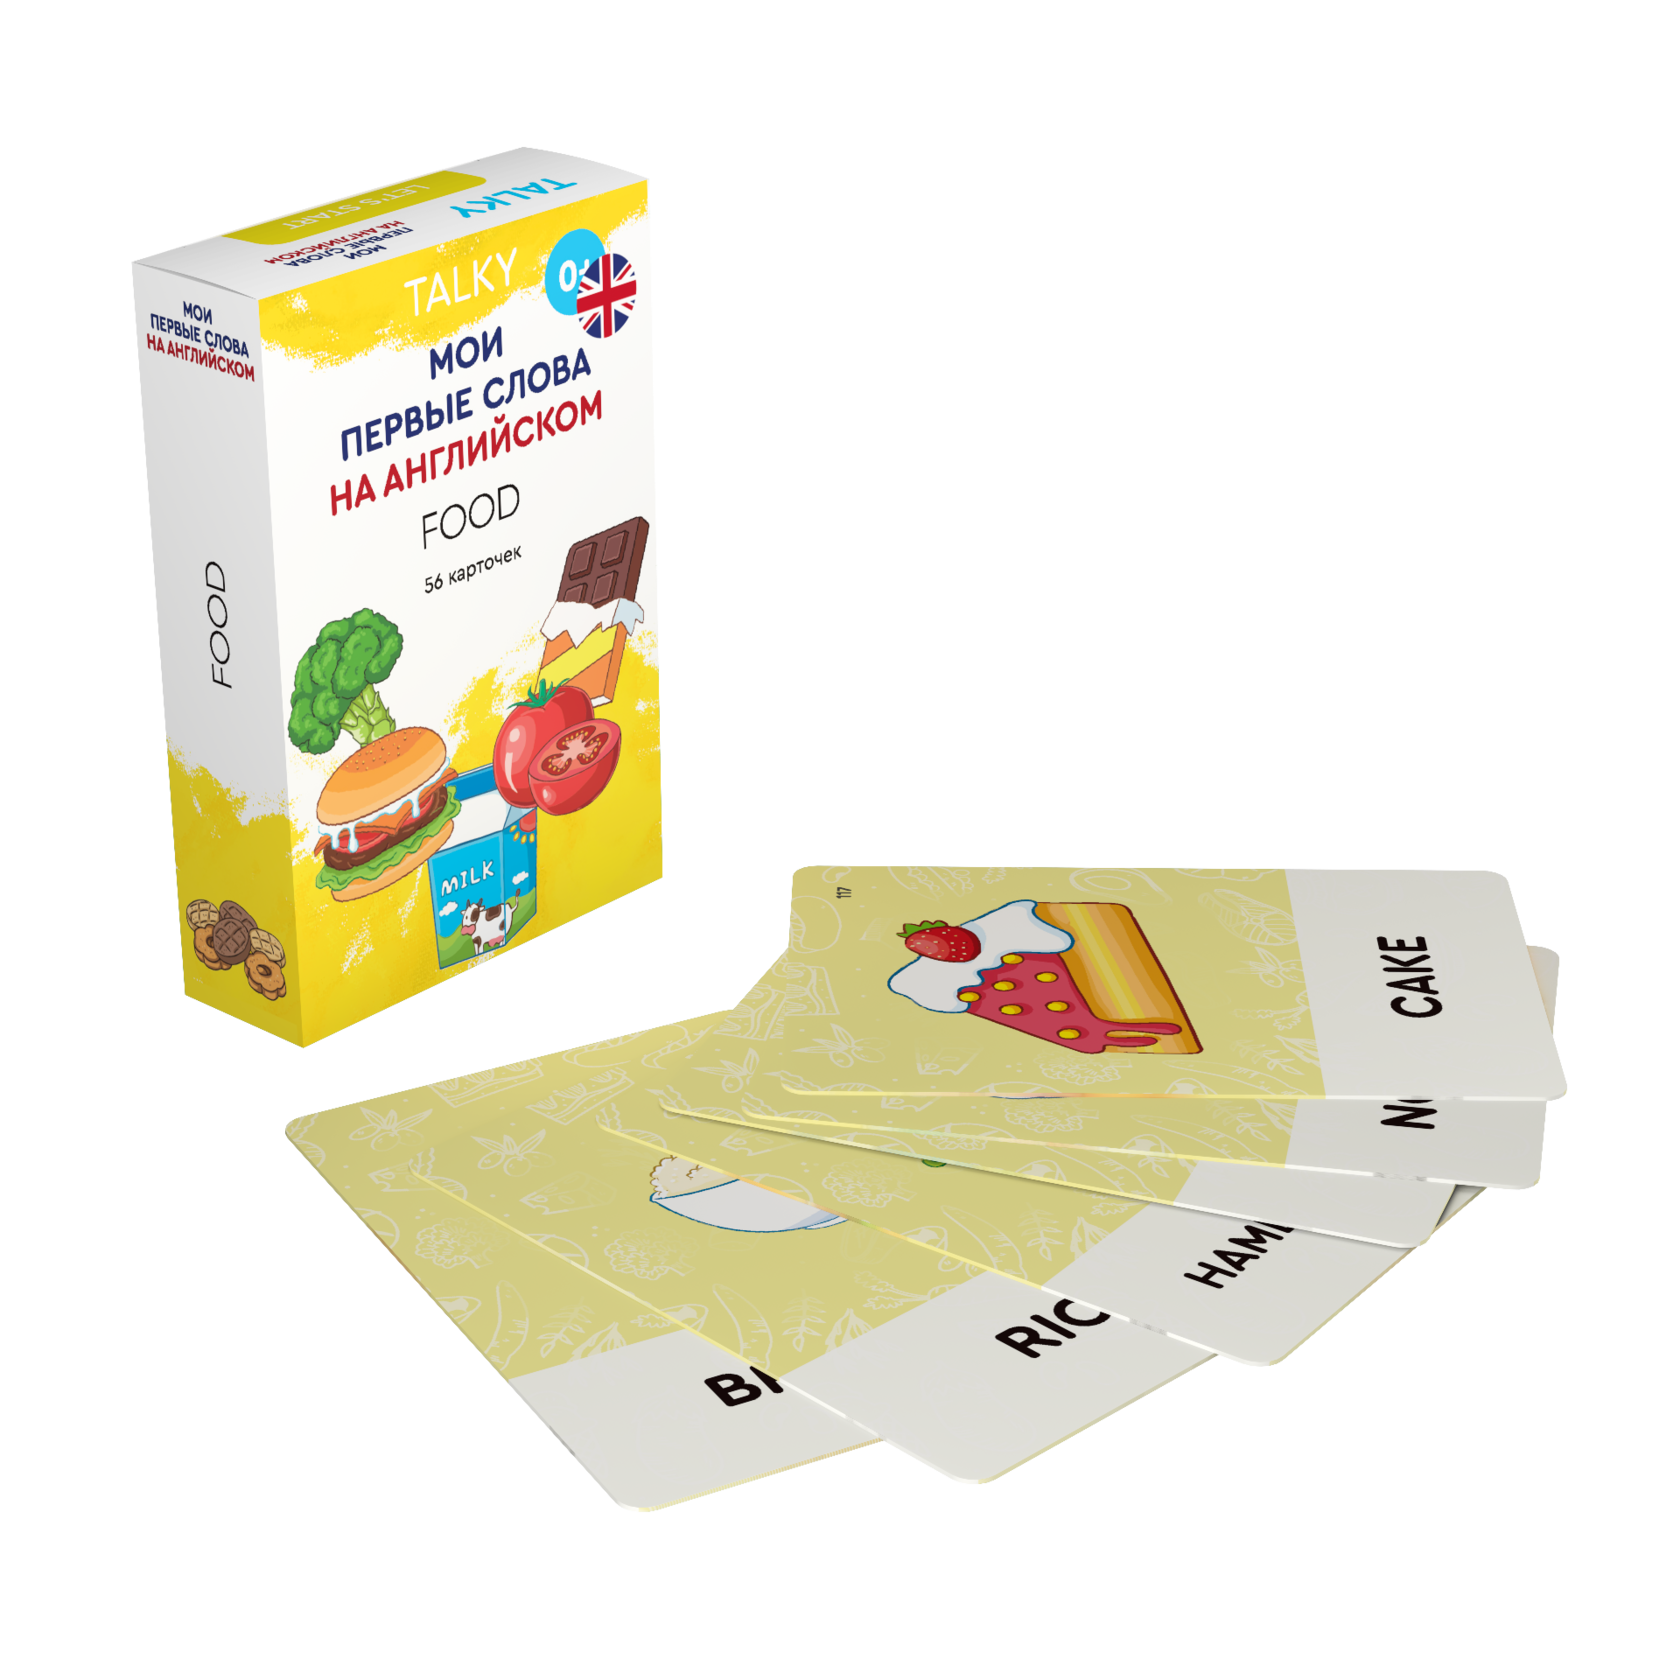 Развивающие карточки для детей LUMICUBE для TALKY, на англ. языке, еда, 56шт. KDTKE02-FOOD lumicube умные карточки talky на русском языке дом транспорт